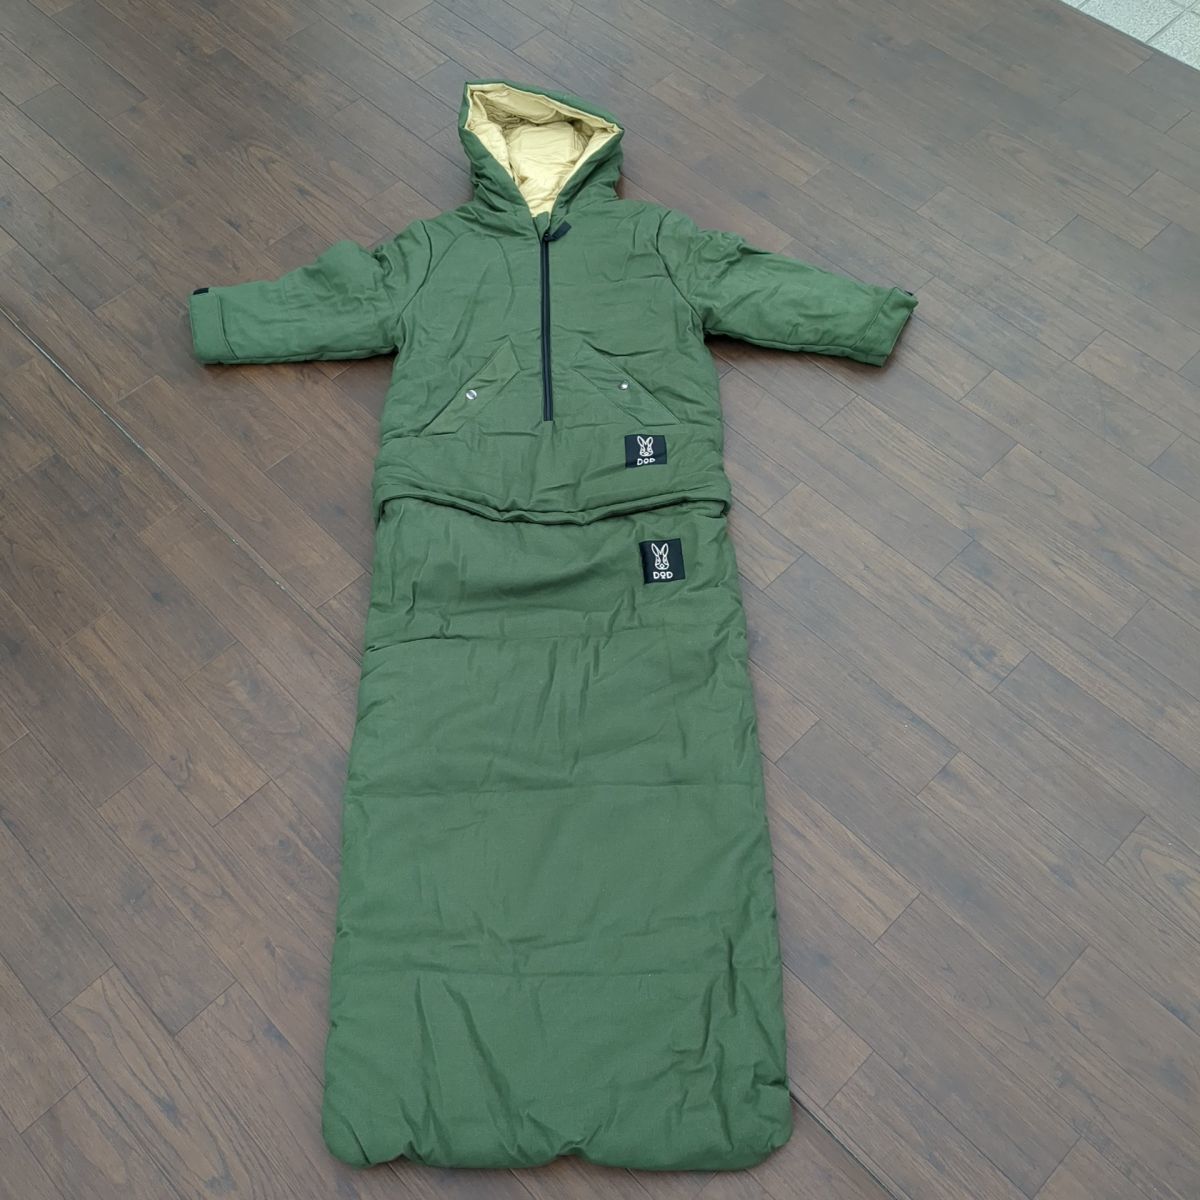 DOD jacket shula2(S) S1-707-KH рекомендация рост 150cm до жакет час длина одежды 59cm 2WAY спальный мешок *3110/ поле механизм Hamamatsu . бамбук магазин 